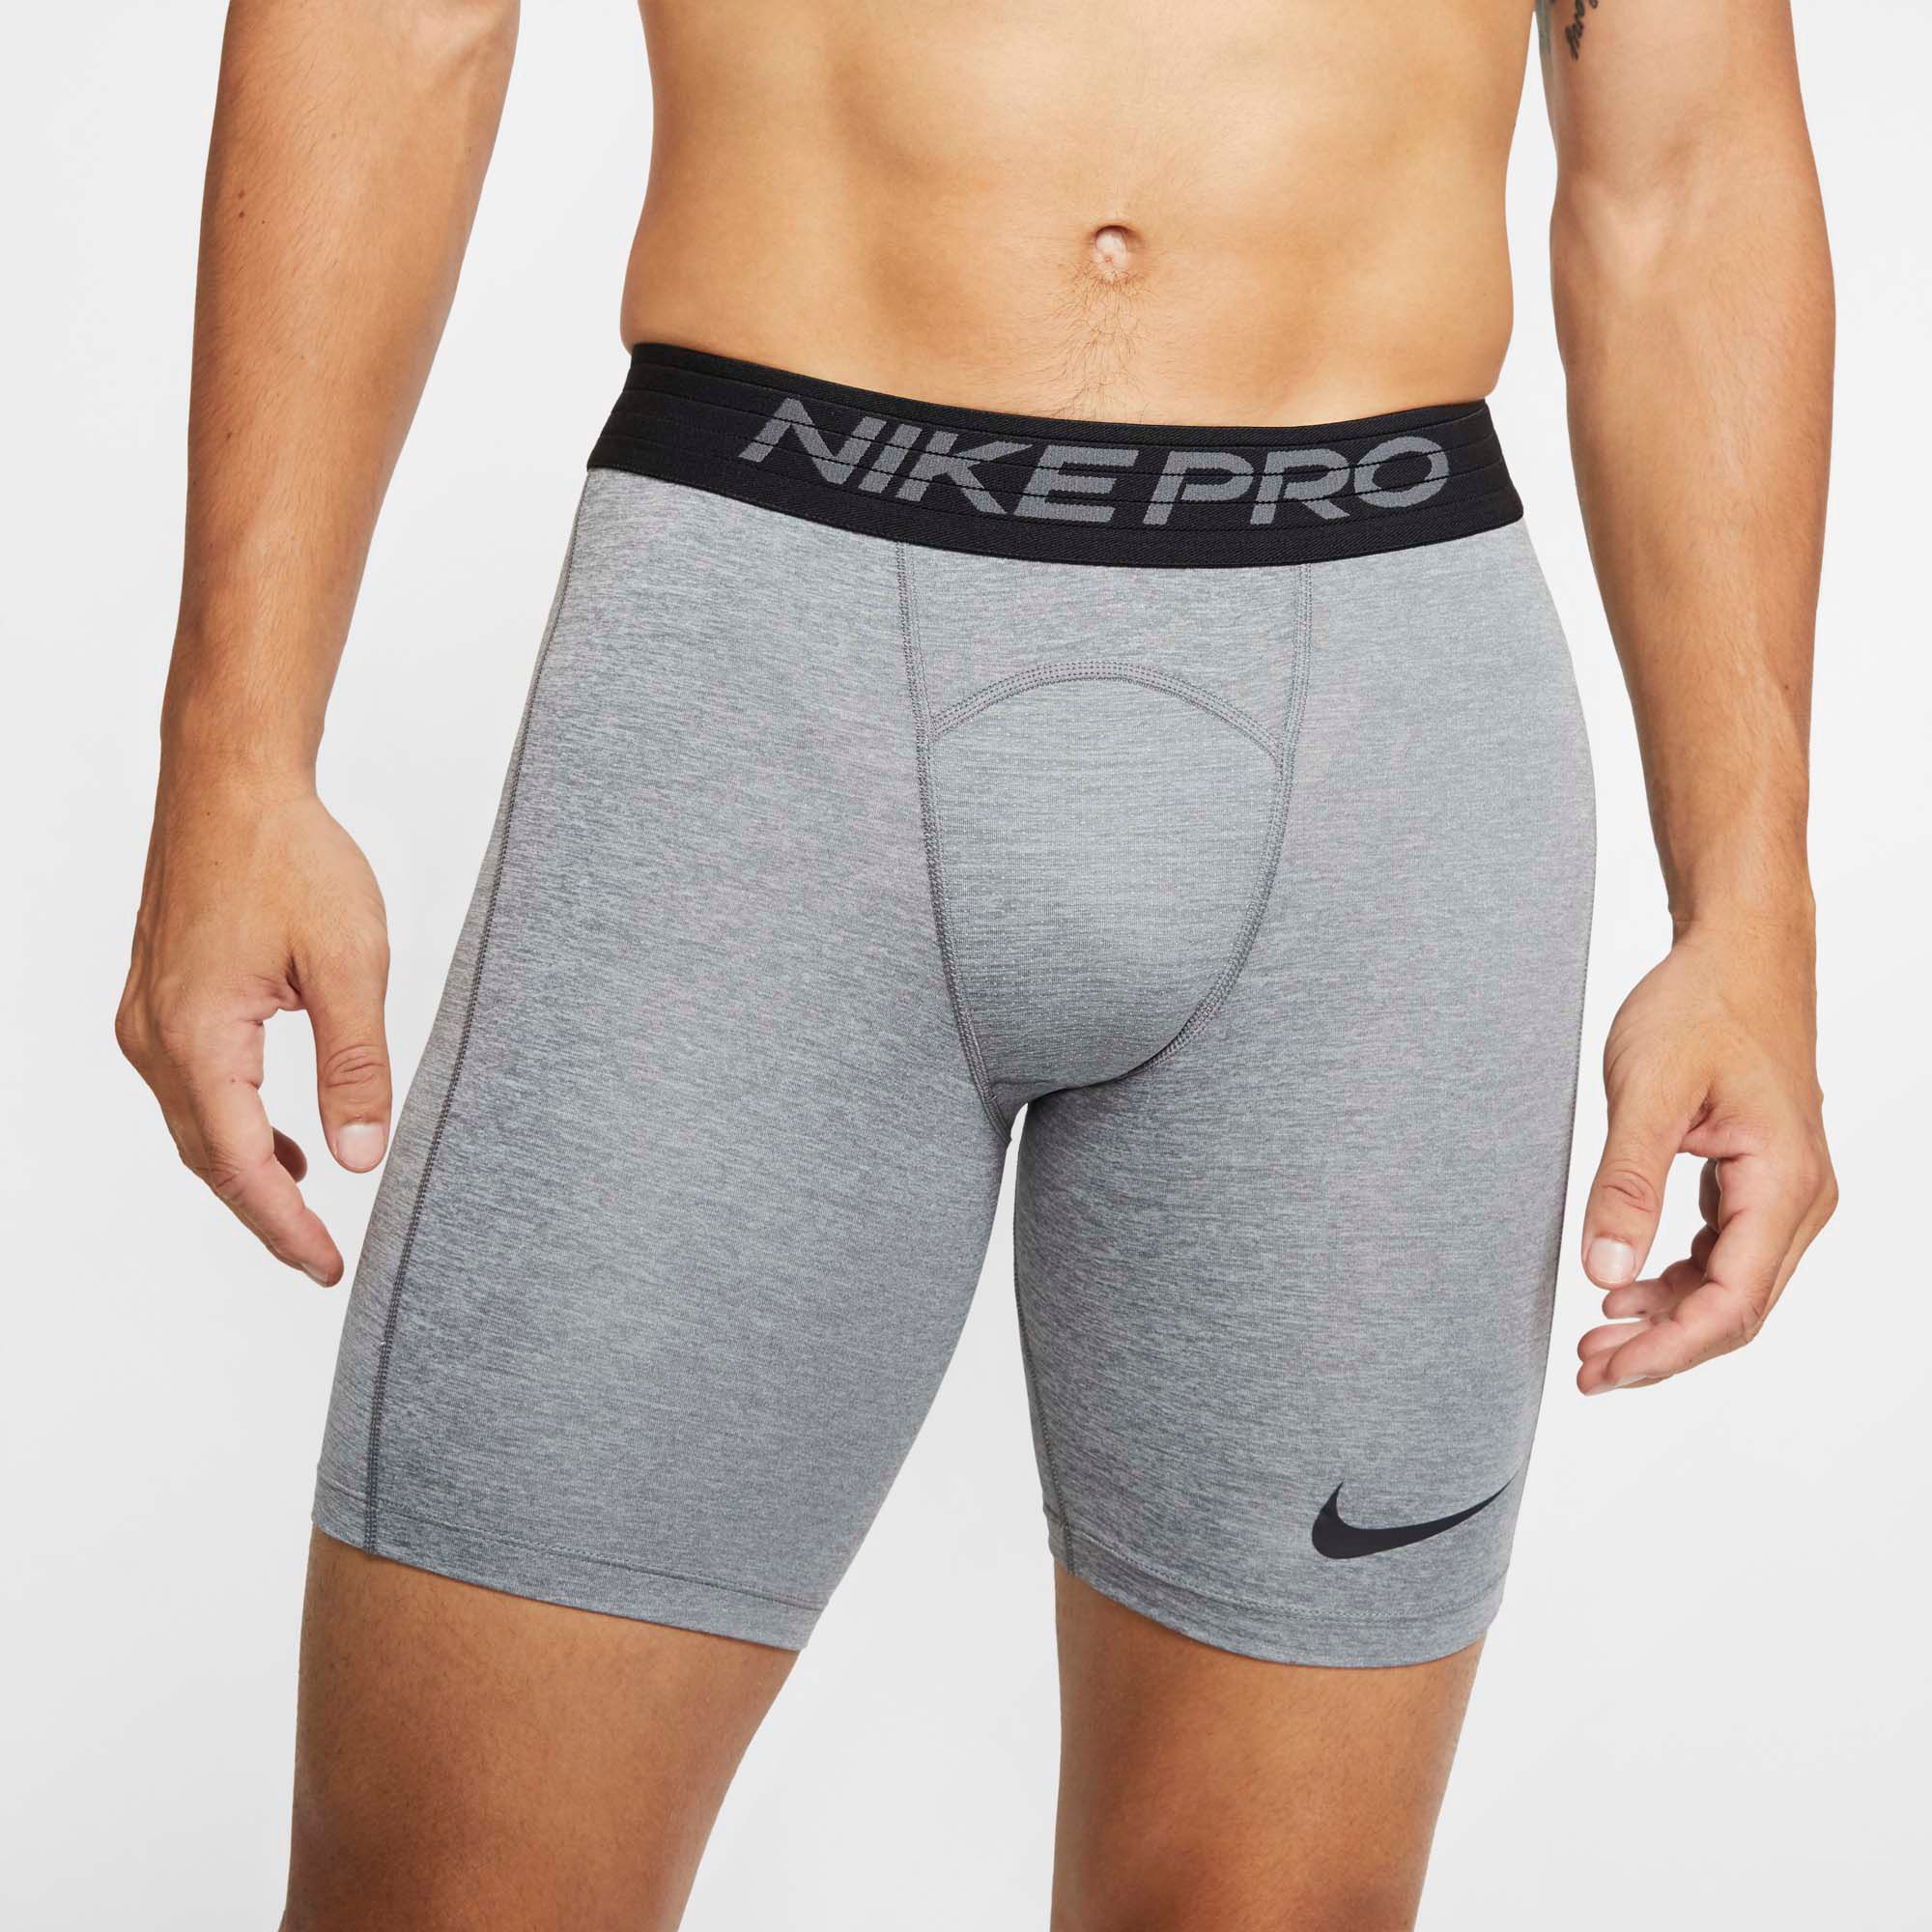 nike pro shorts size 6